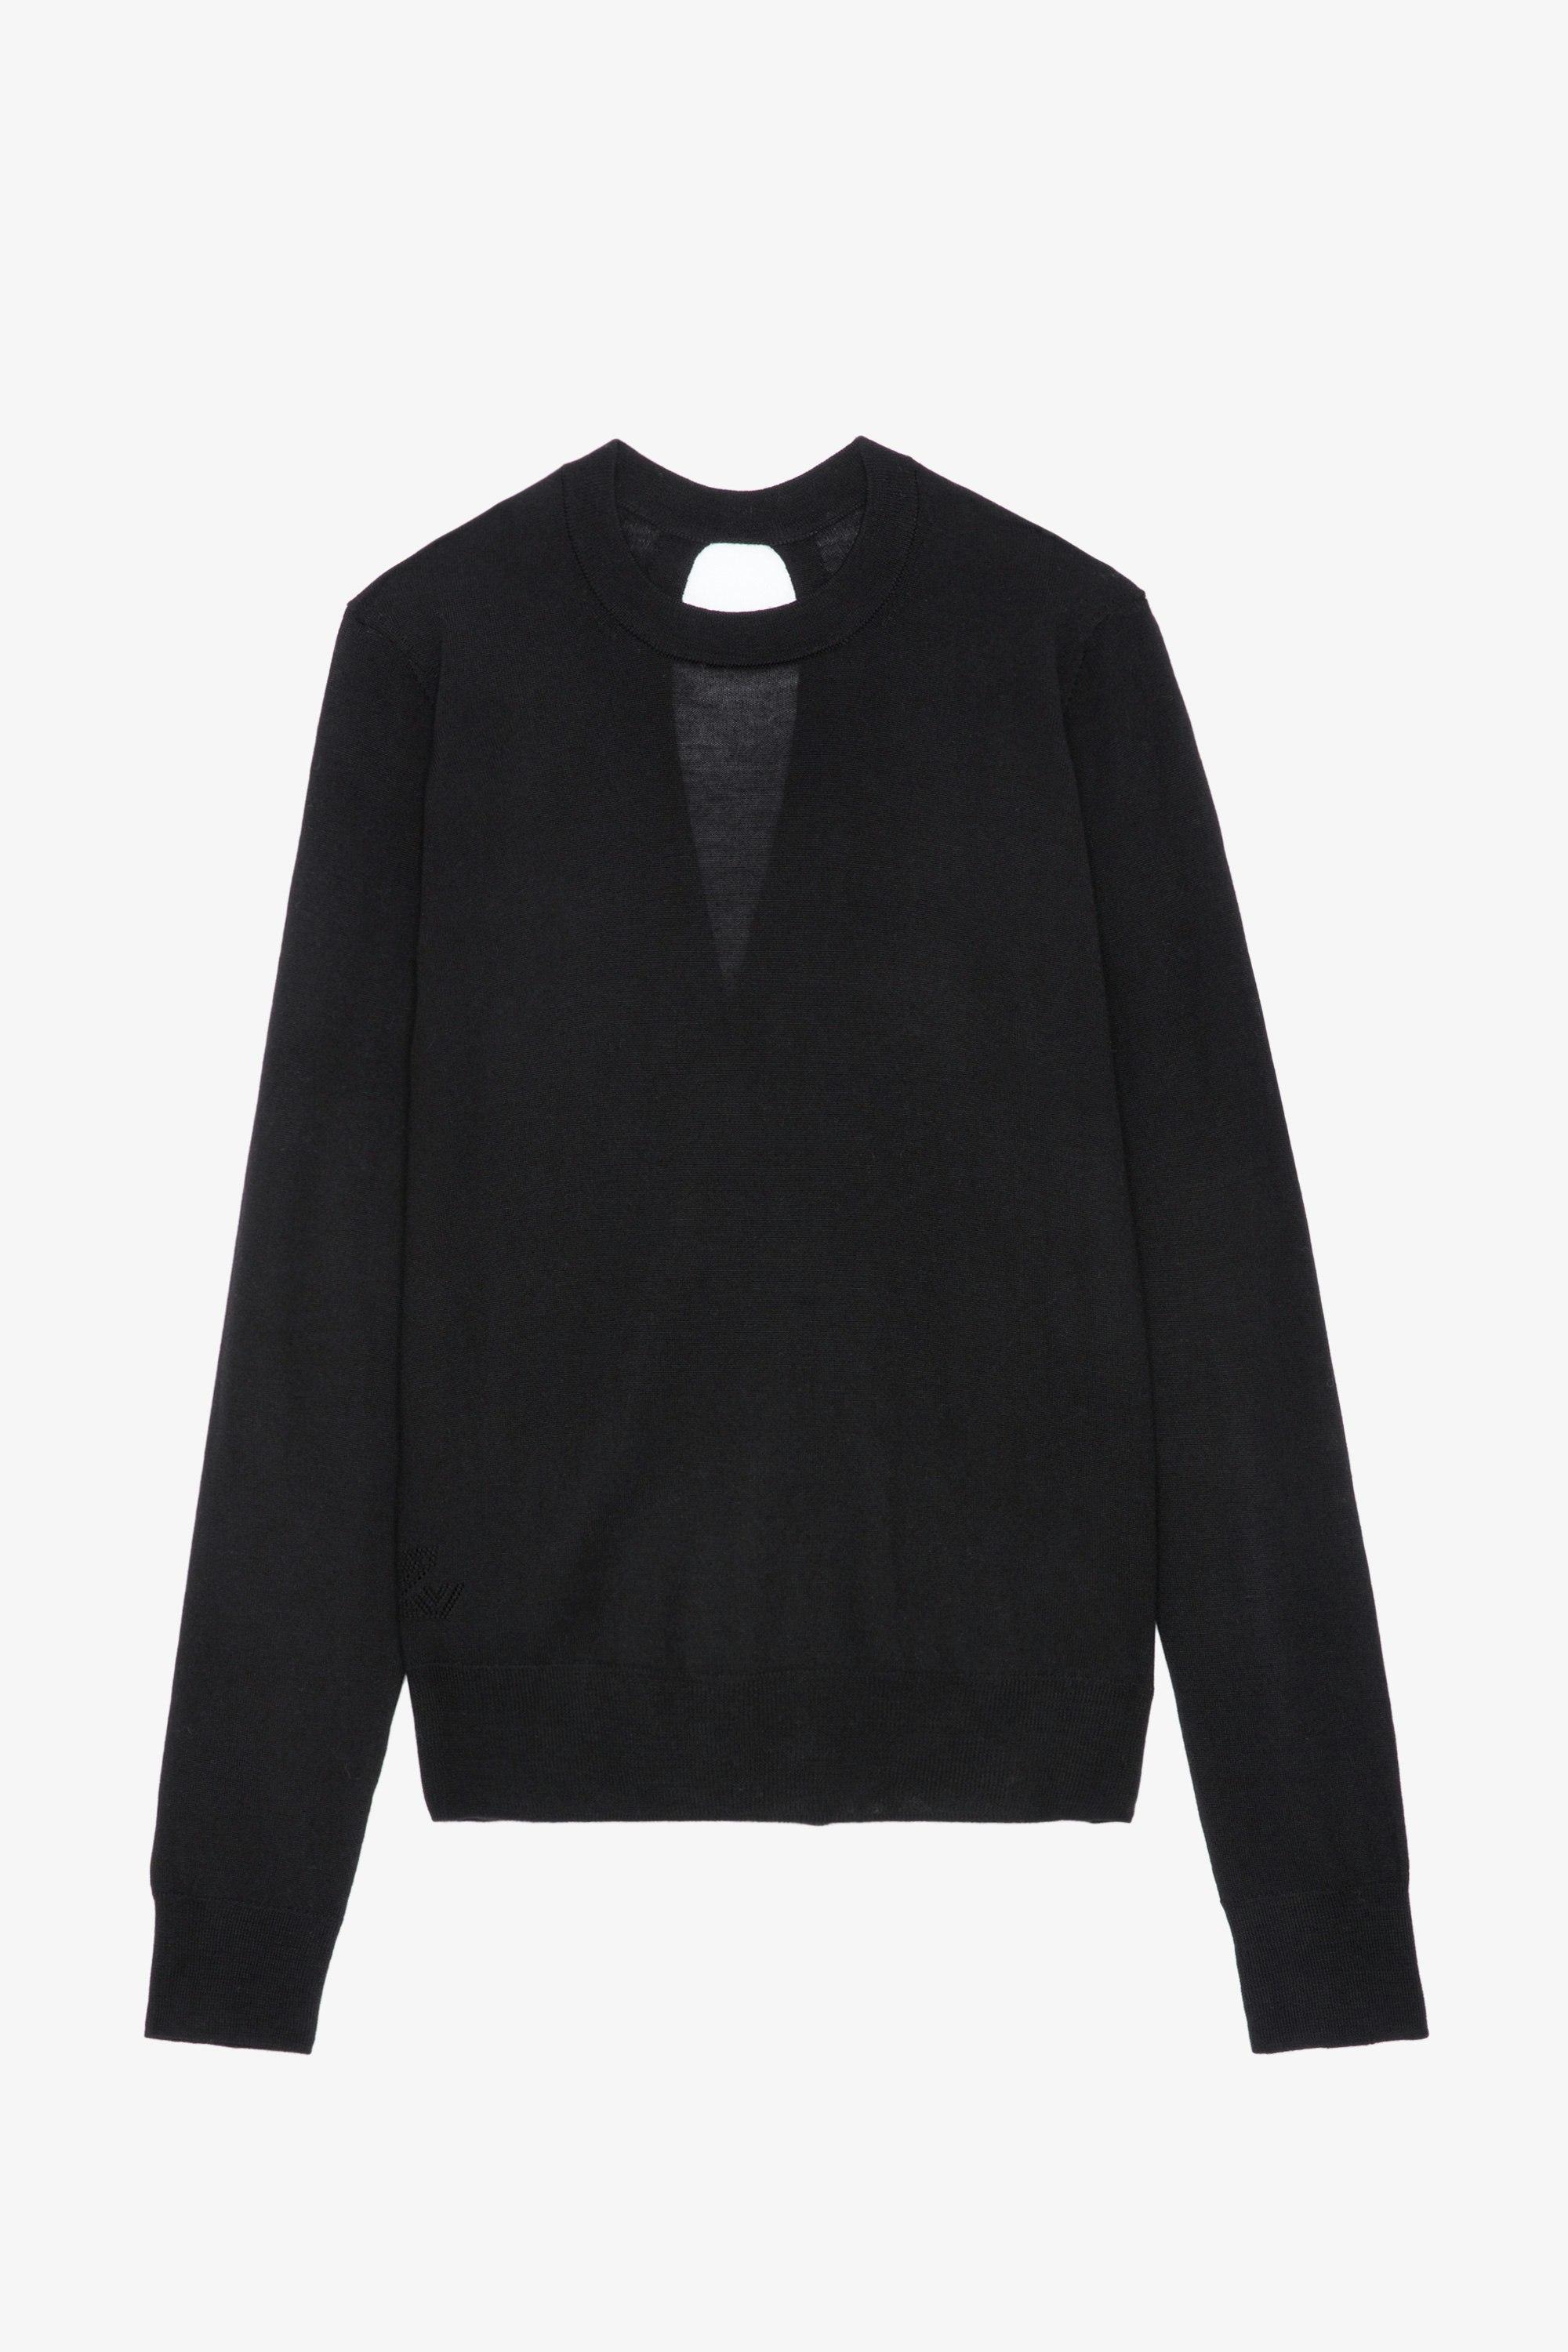 Jersey Emma - Jersey negro de lana merina con cuello redondo, mangas largas y espalda cruzada y abierta.